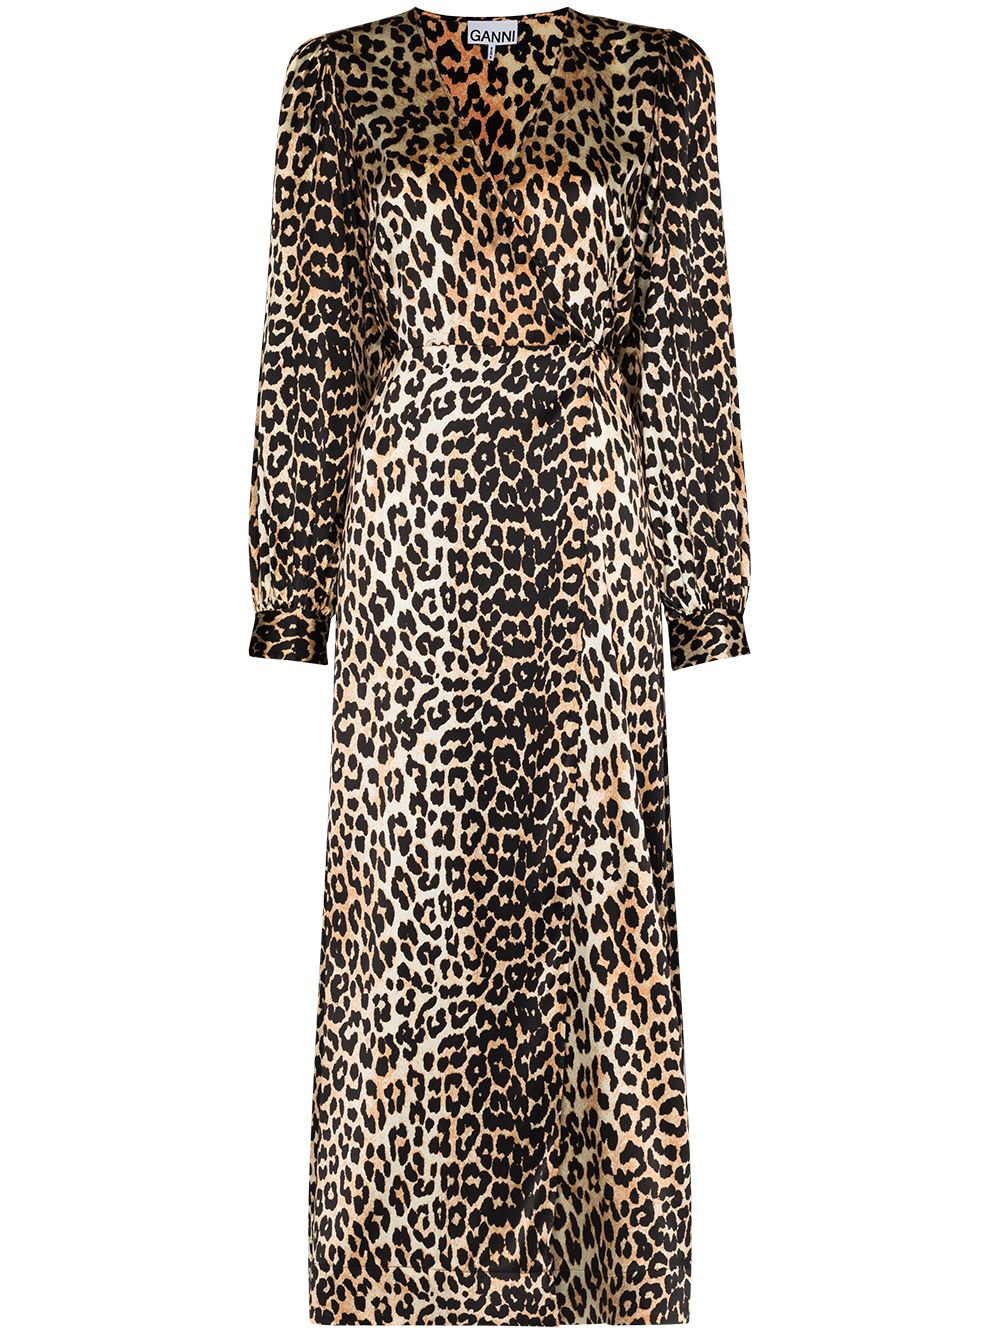 GANNI Leopard Print Midi Dress - Farfetch